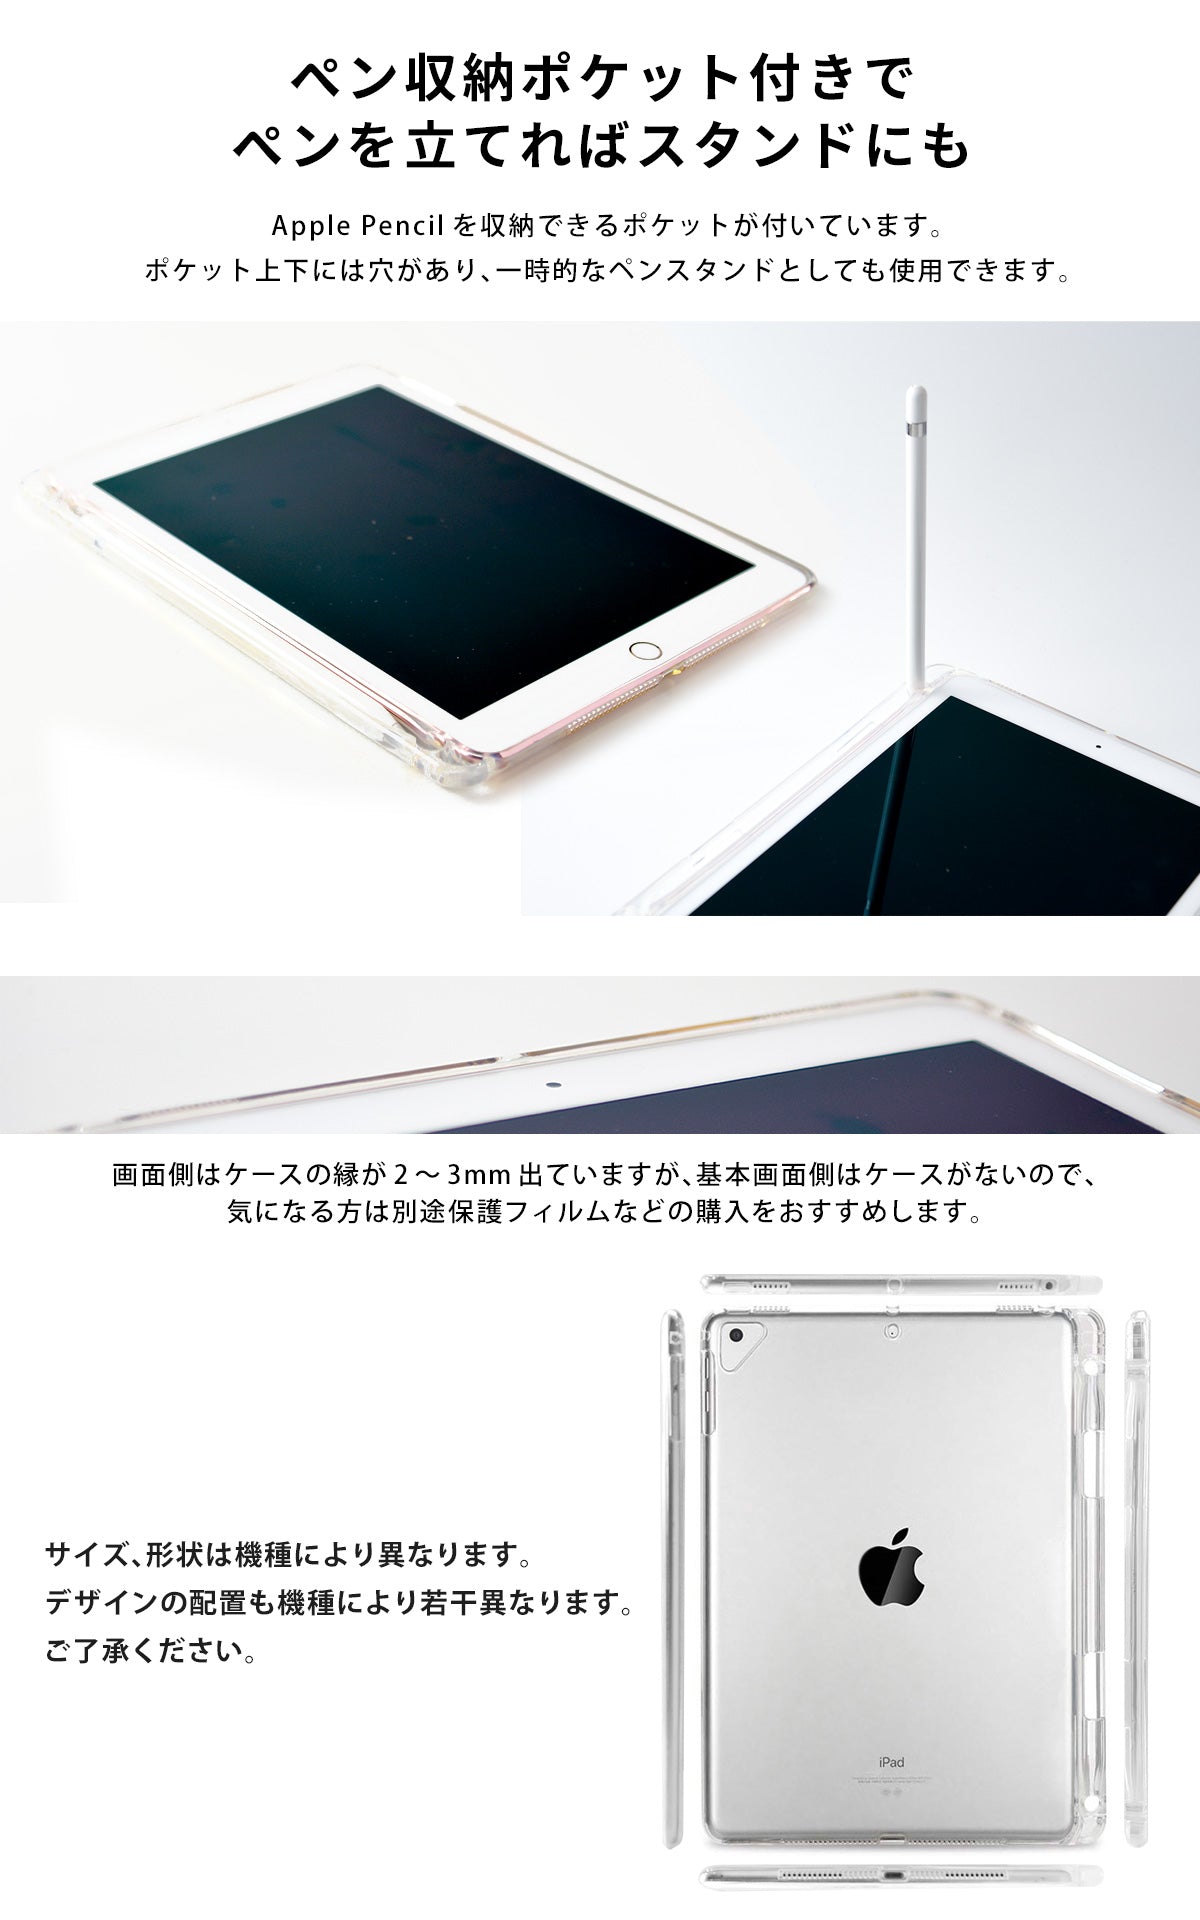 サメ イラスト mini6 iPad Air4 ケース ipad Air5 第9世代 10.2インチ ipad9 可愛い 2020 9.7 2019 第7世代 mini5 ケース 三つ折り保護カバー 軽量 鮫